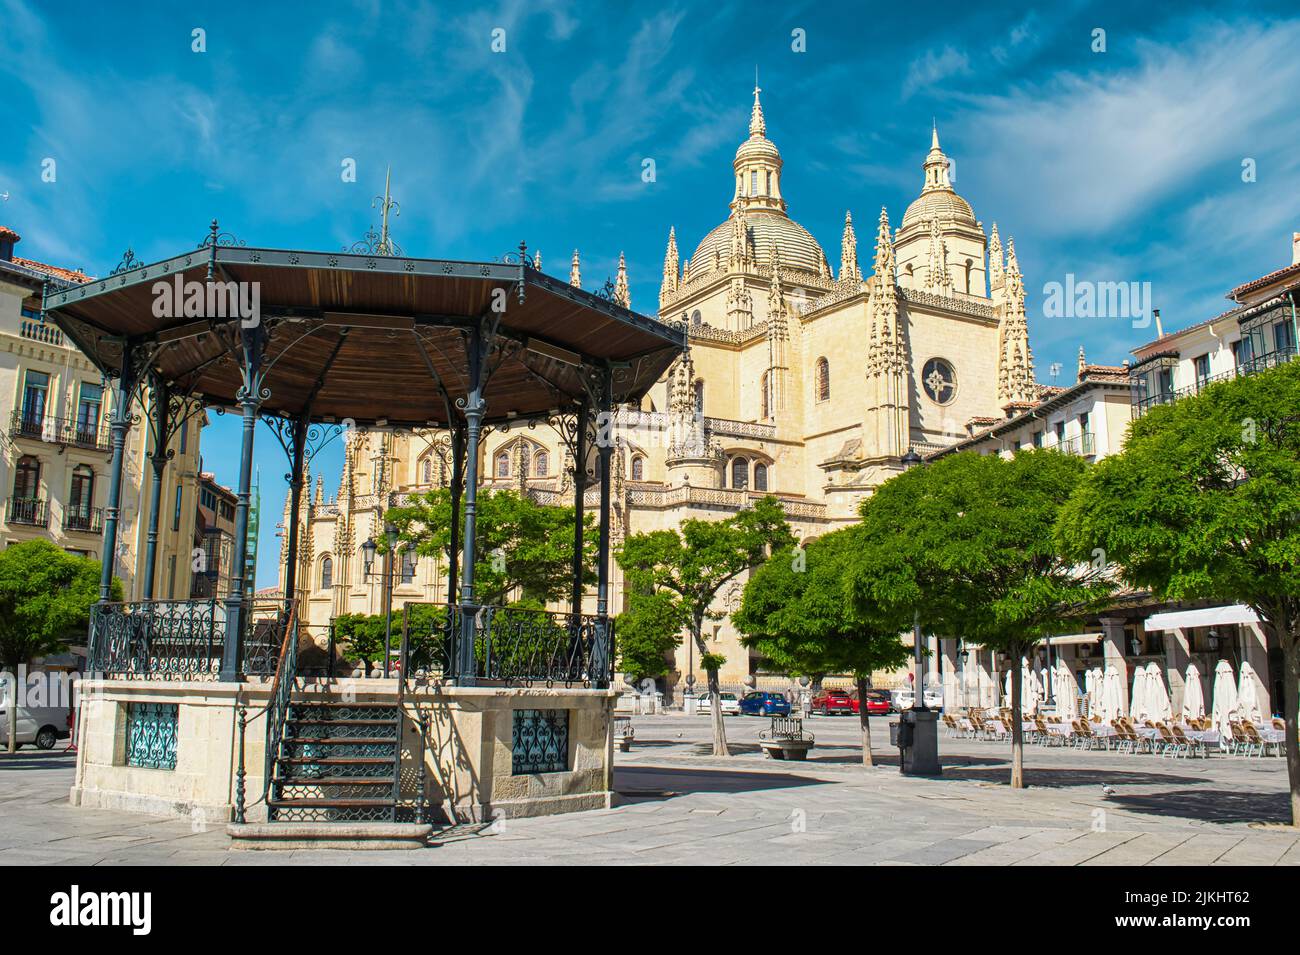 Plaza mayor de la ciudad castellana de Segovia con su catedral gótica al fondo, España Stock Photo